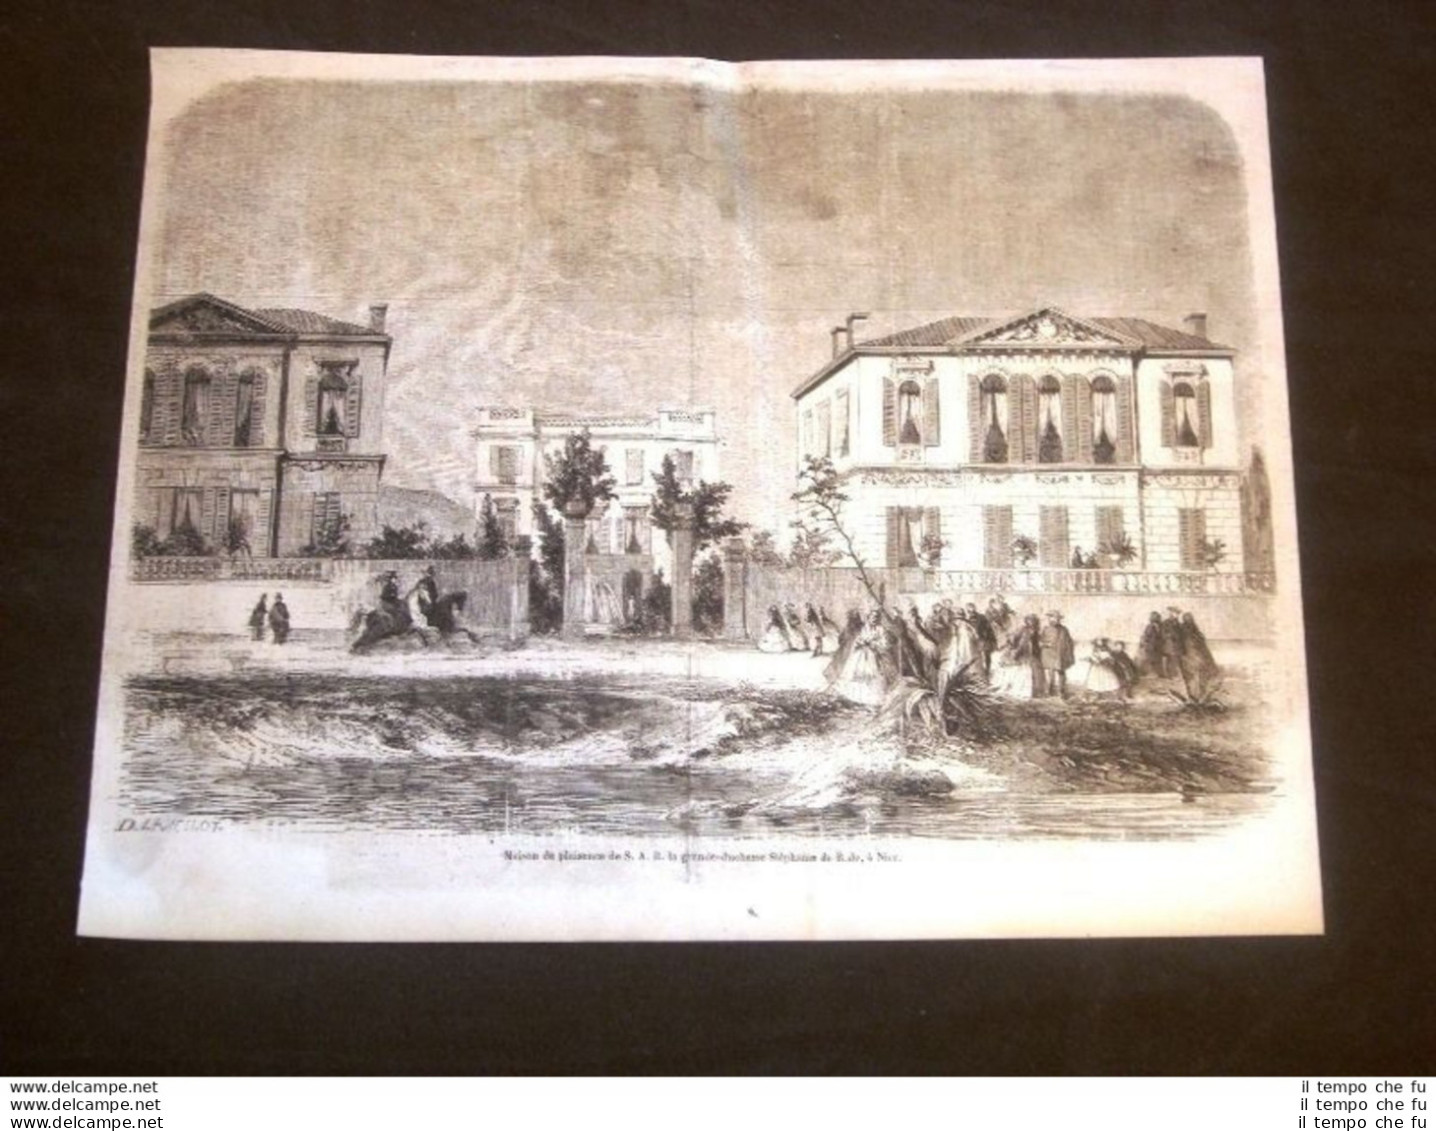 Nizza Nel 1858 Casa Di Piacere Sua Altezza Reale Granduchessa Stéphanie De Bade - Voor 1900